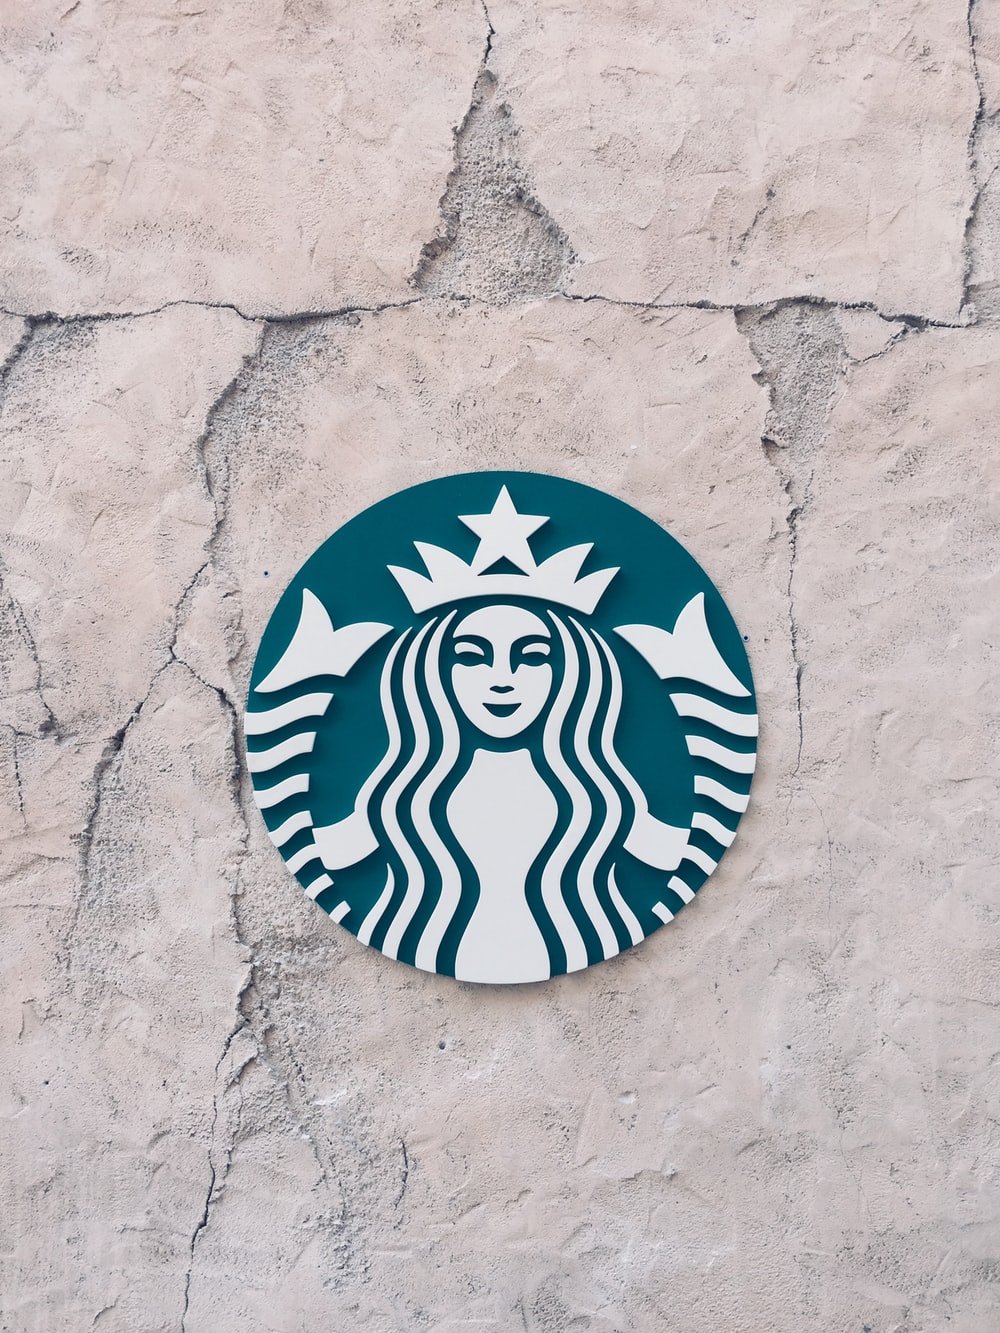 Starbucks Wallpapers HD Download [500 HQ] Unsplash 1000x1333